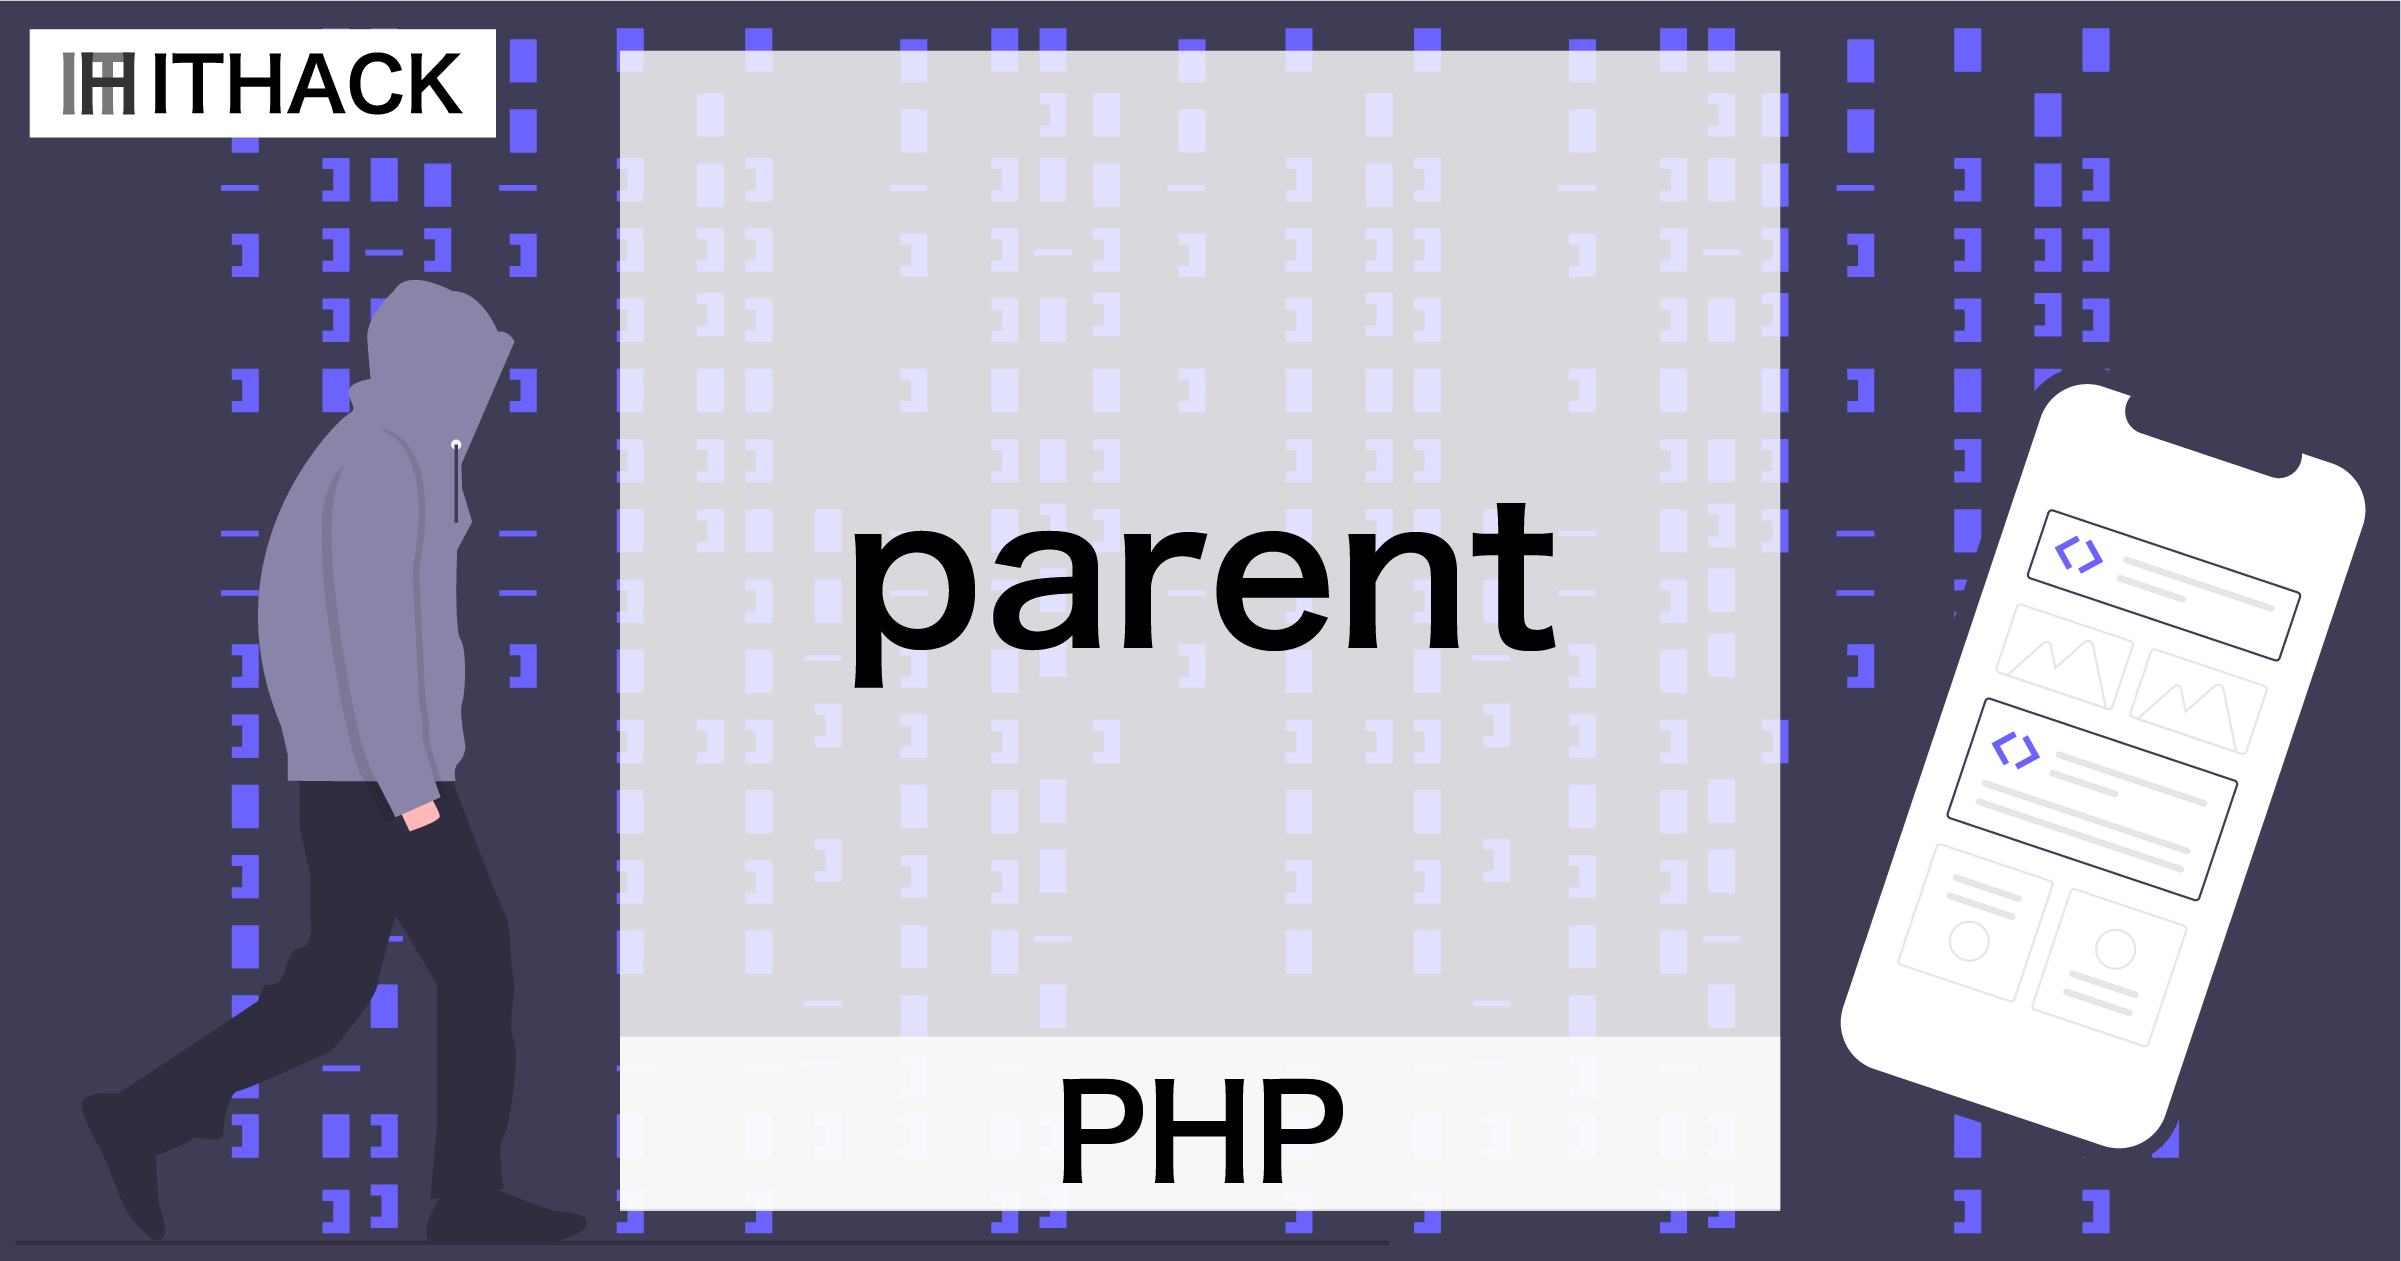 【PHP】parent - スーパークラスのメソッド呼び出し